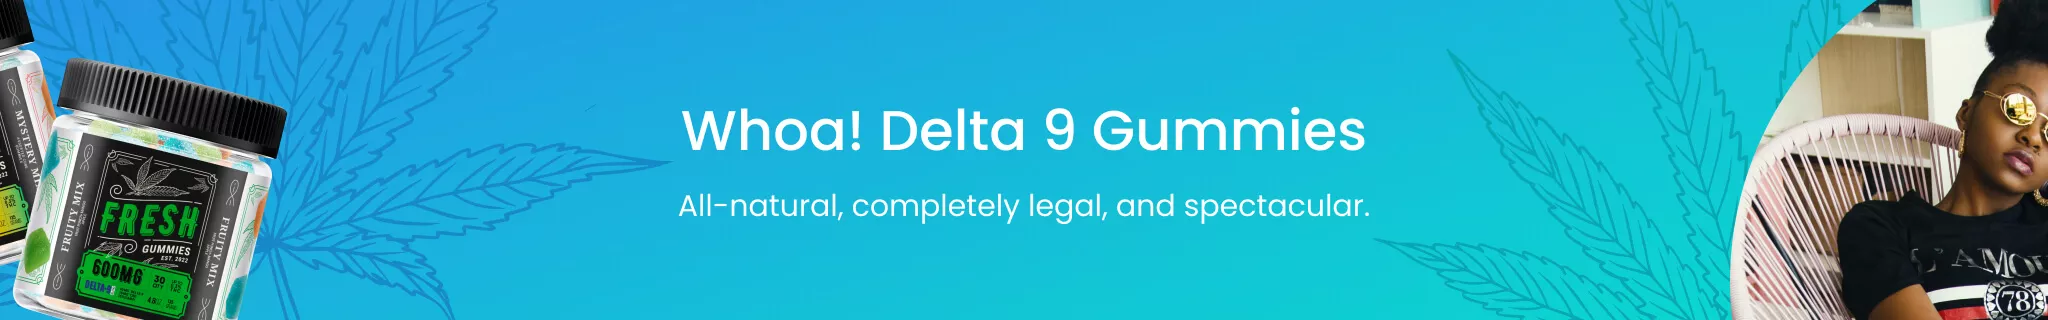  Delta 9 Gummies